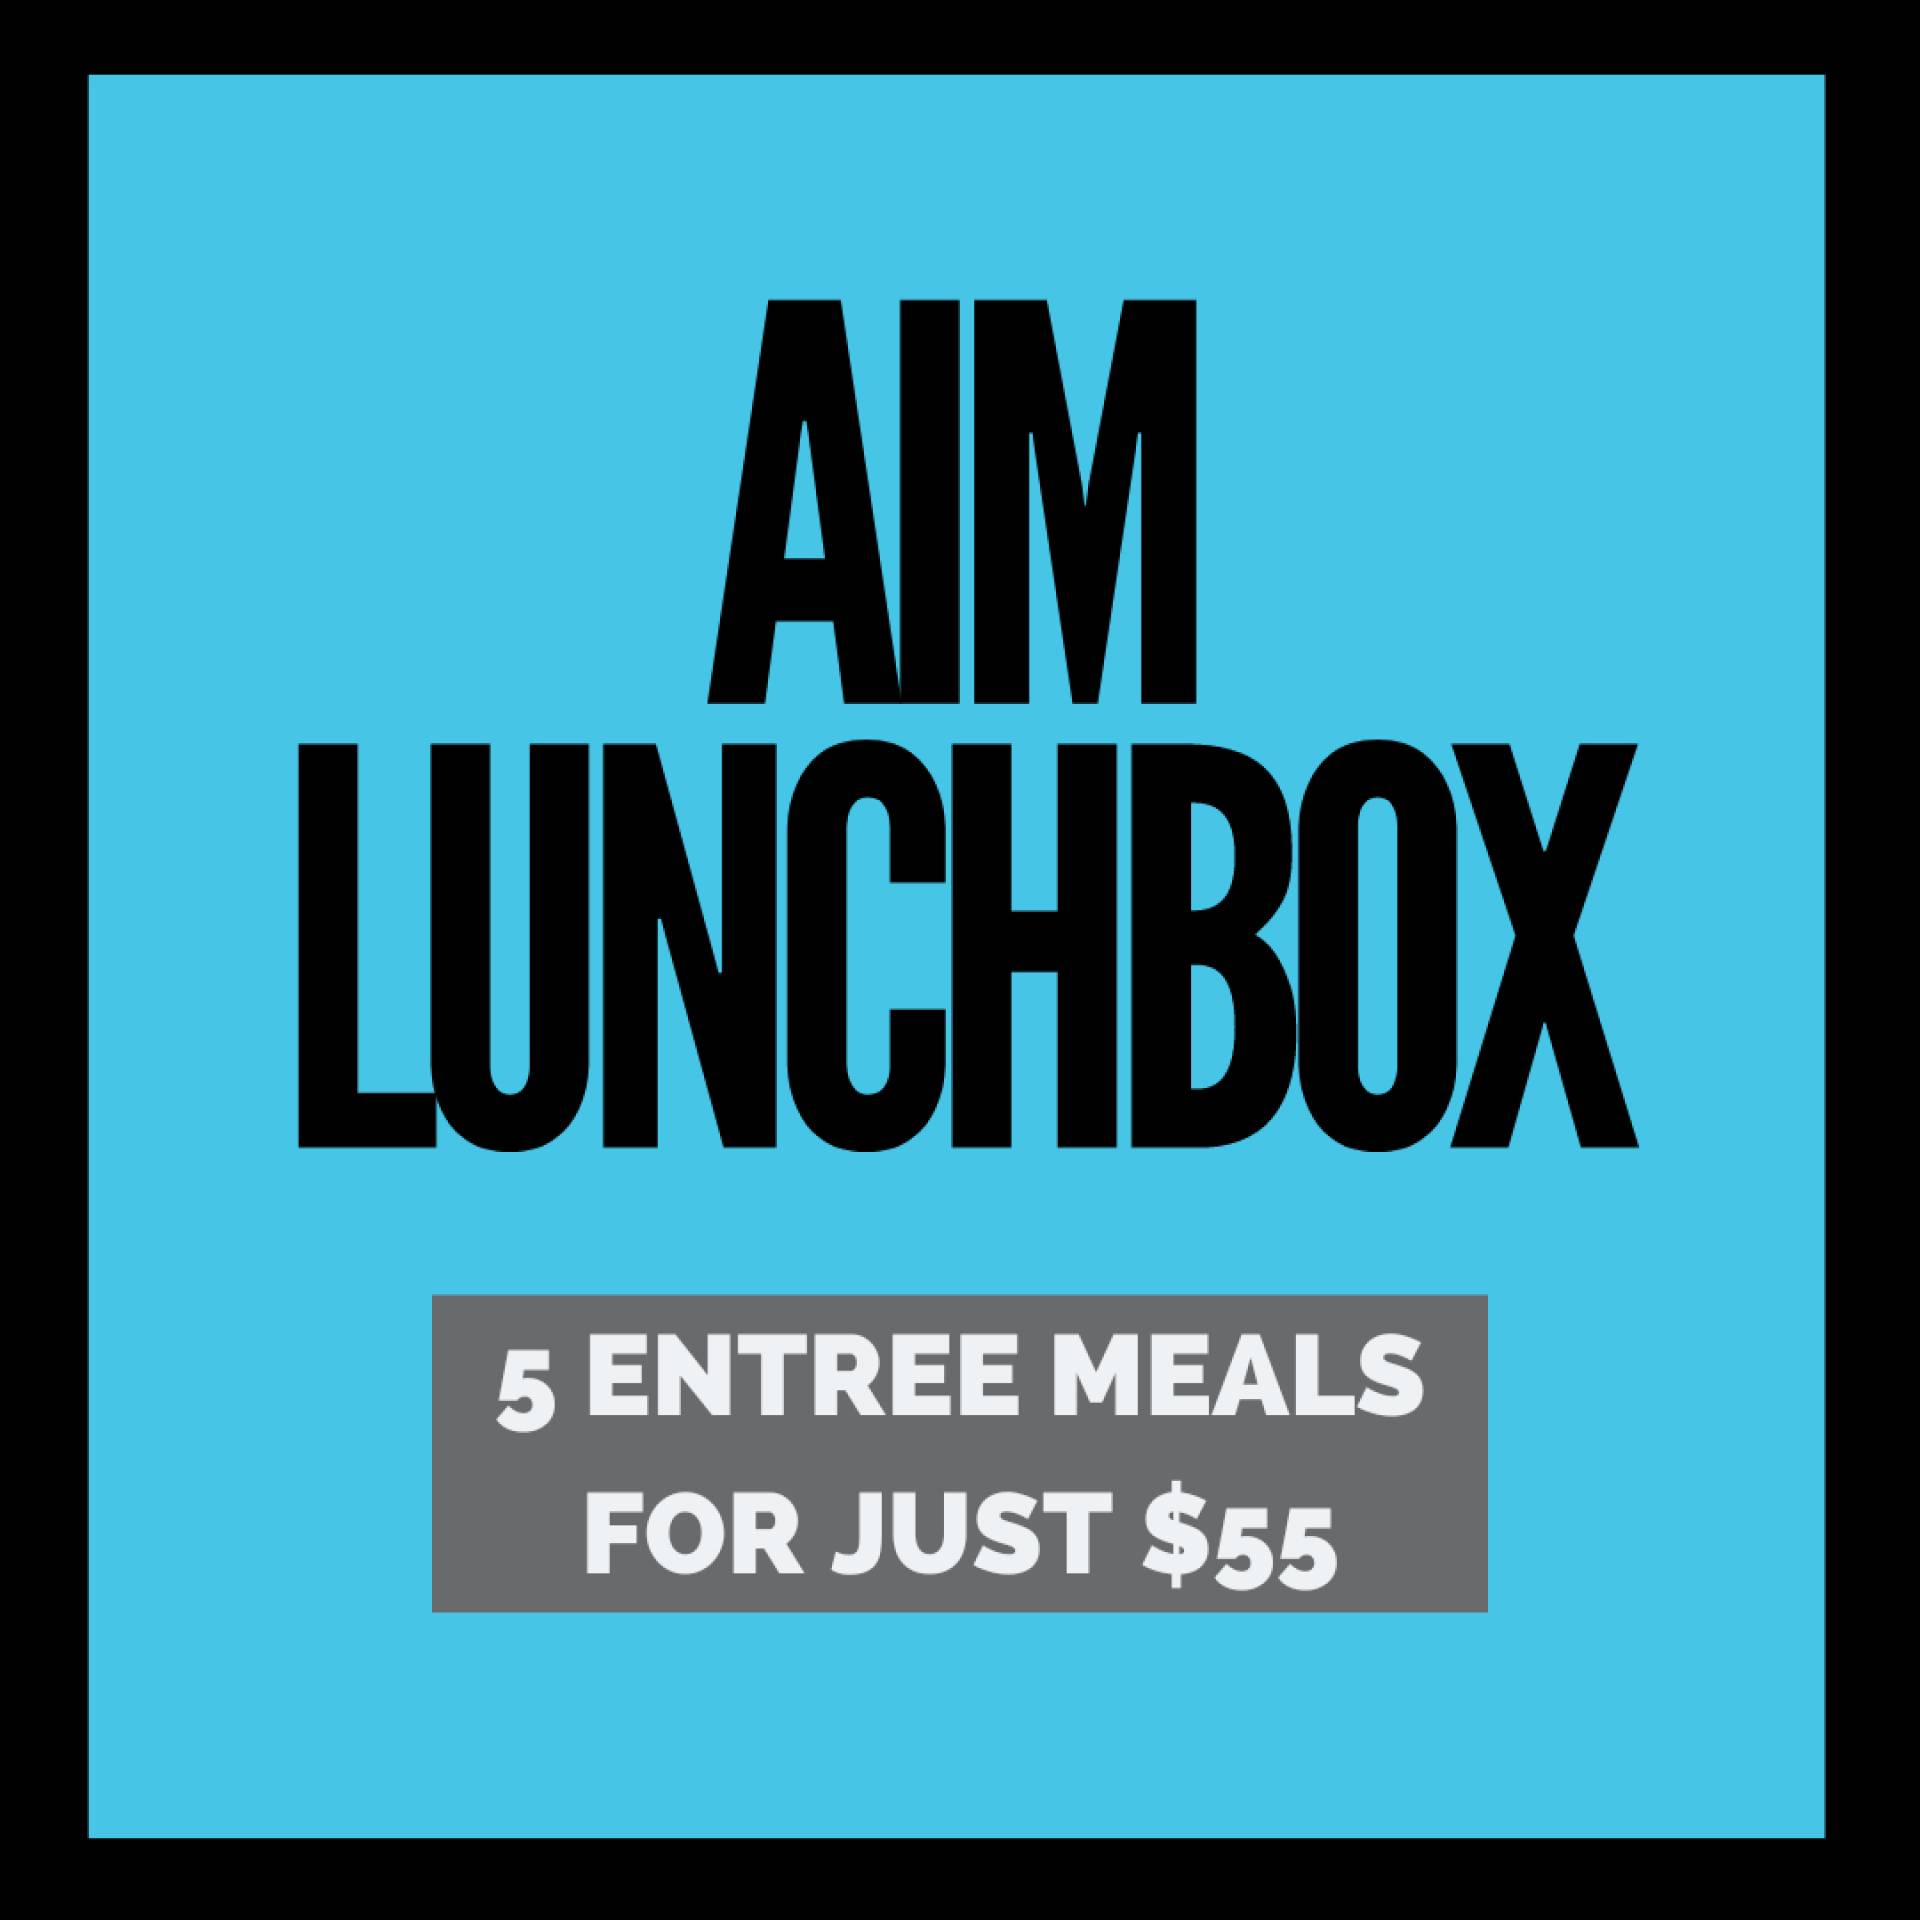 AIM Lunchbox